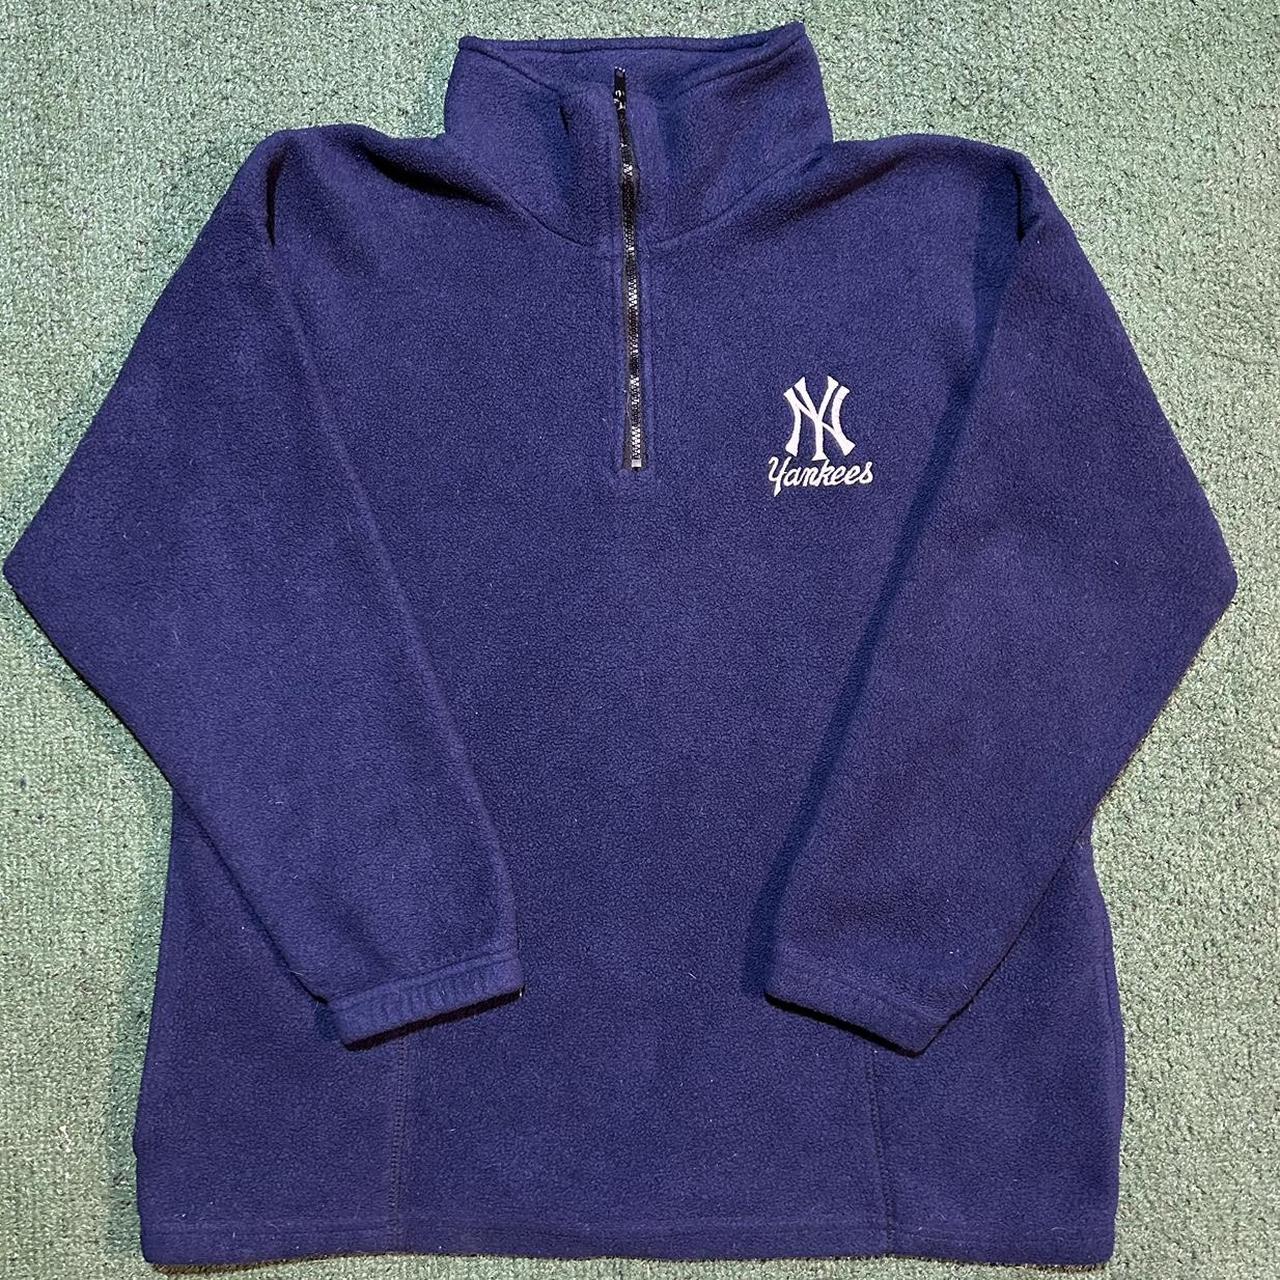 Vintage 90s Adidas Yankees 1/4 Zip up Pullover...